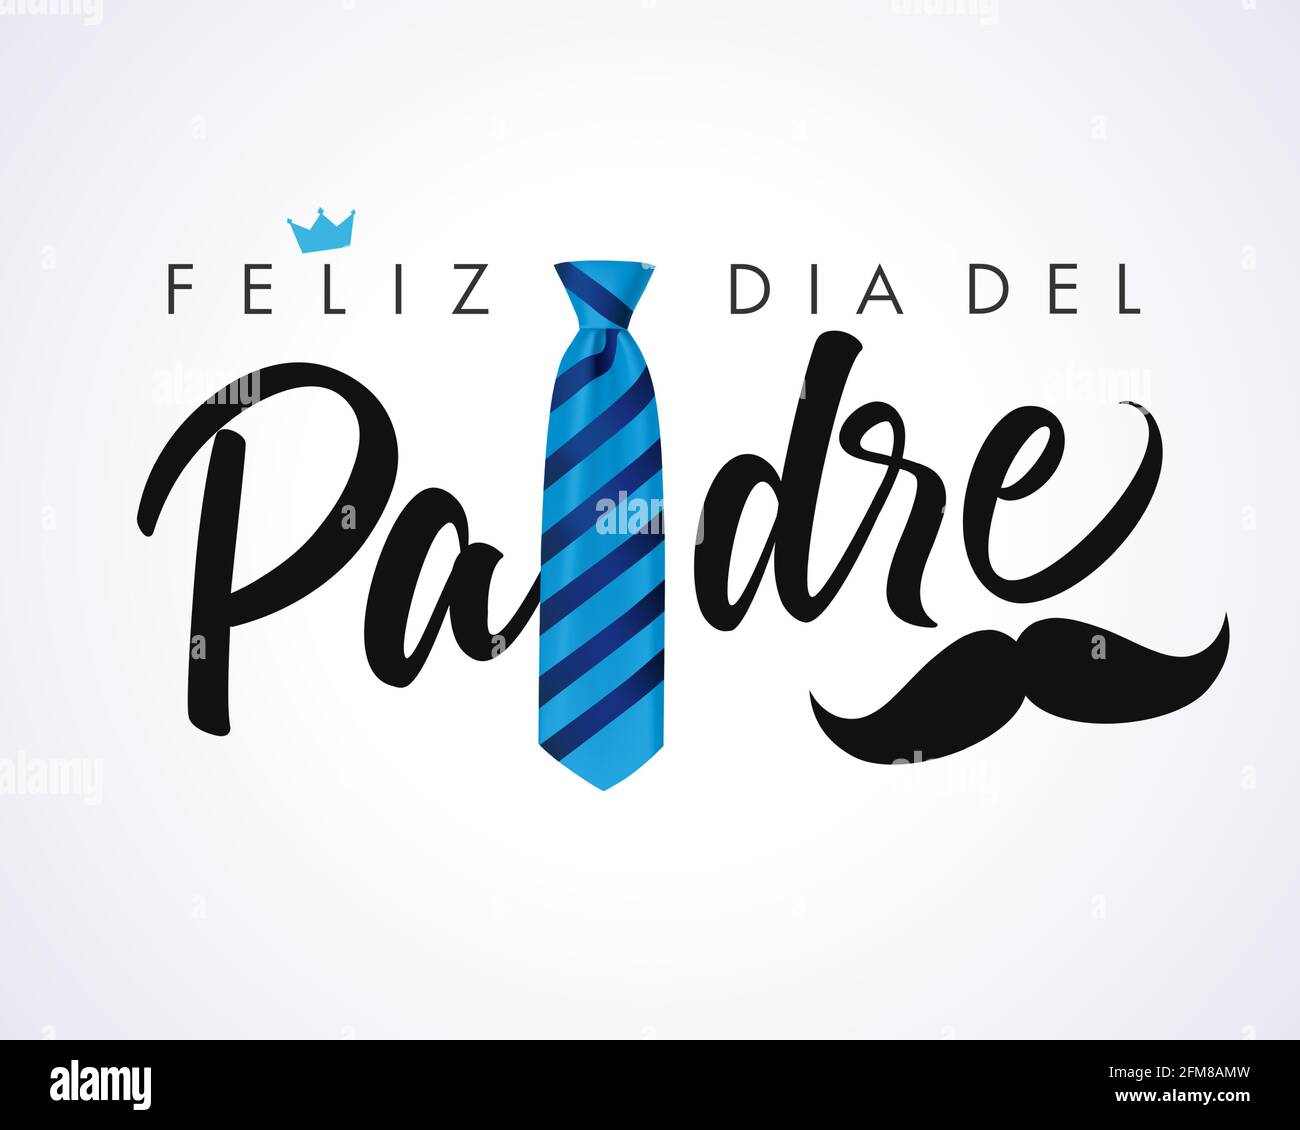 Feliz dia del Padre caligrafía tarjeta de felicitación corona y bigote, español elegante letras: Feliz día de los padres. Ilustración de saludo vectorial Ilustración del Vector